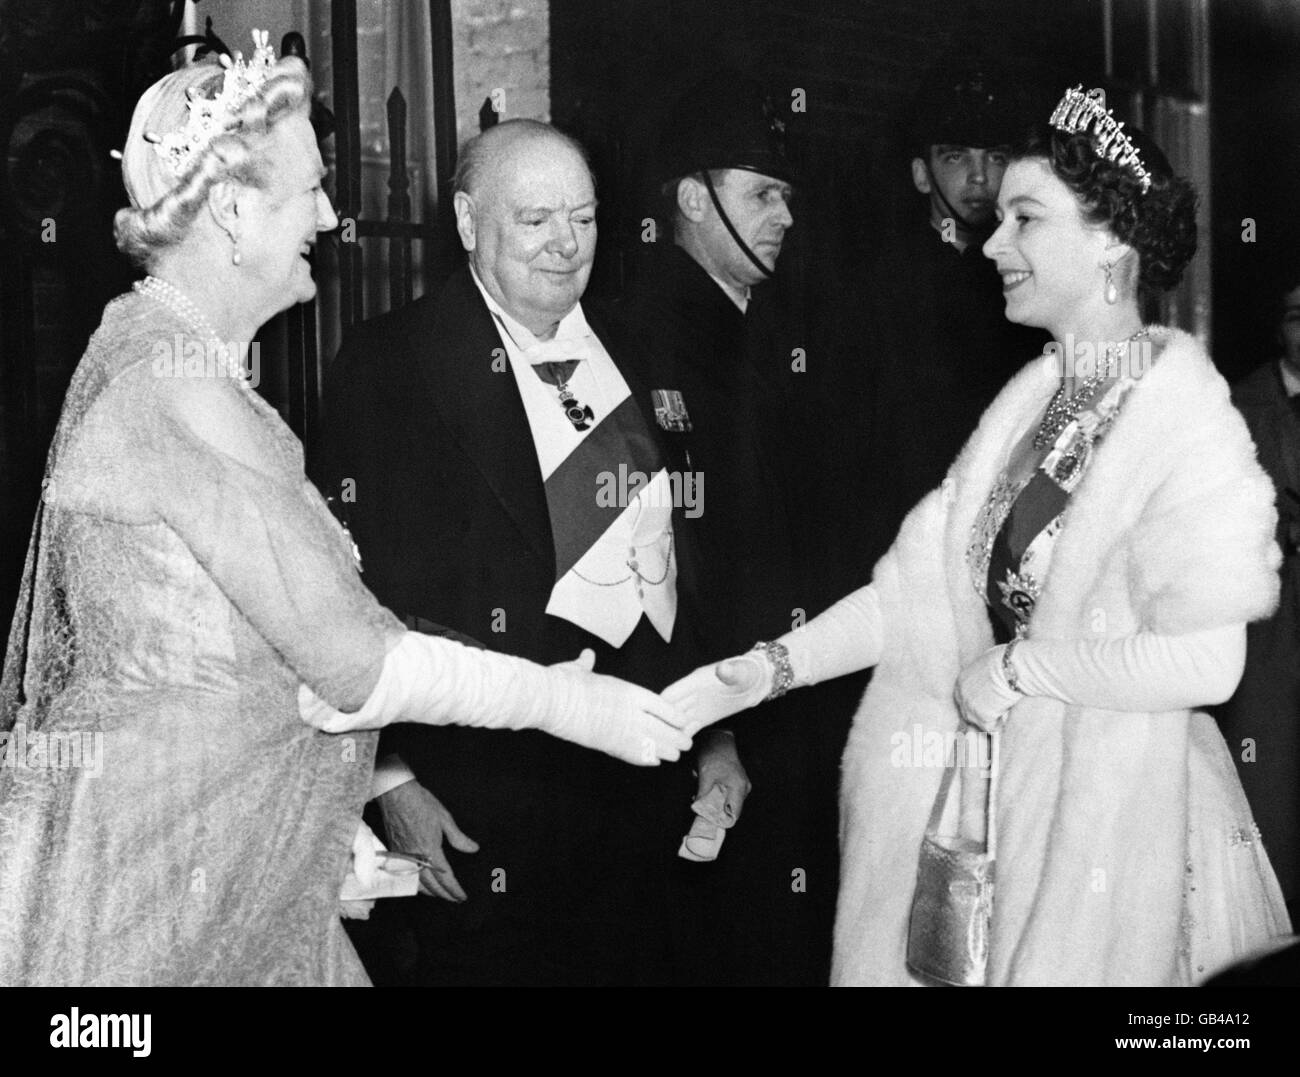 La regina Elisabetta II viene accolta da Lady Churchill e Sir Winston Churchill, quando arriva per una cena al n° 10 Downing Street. Foto Stock